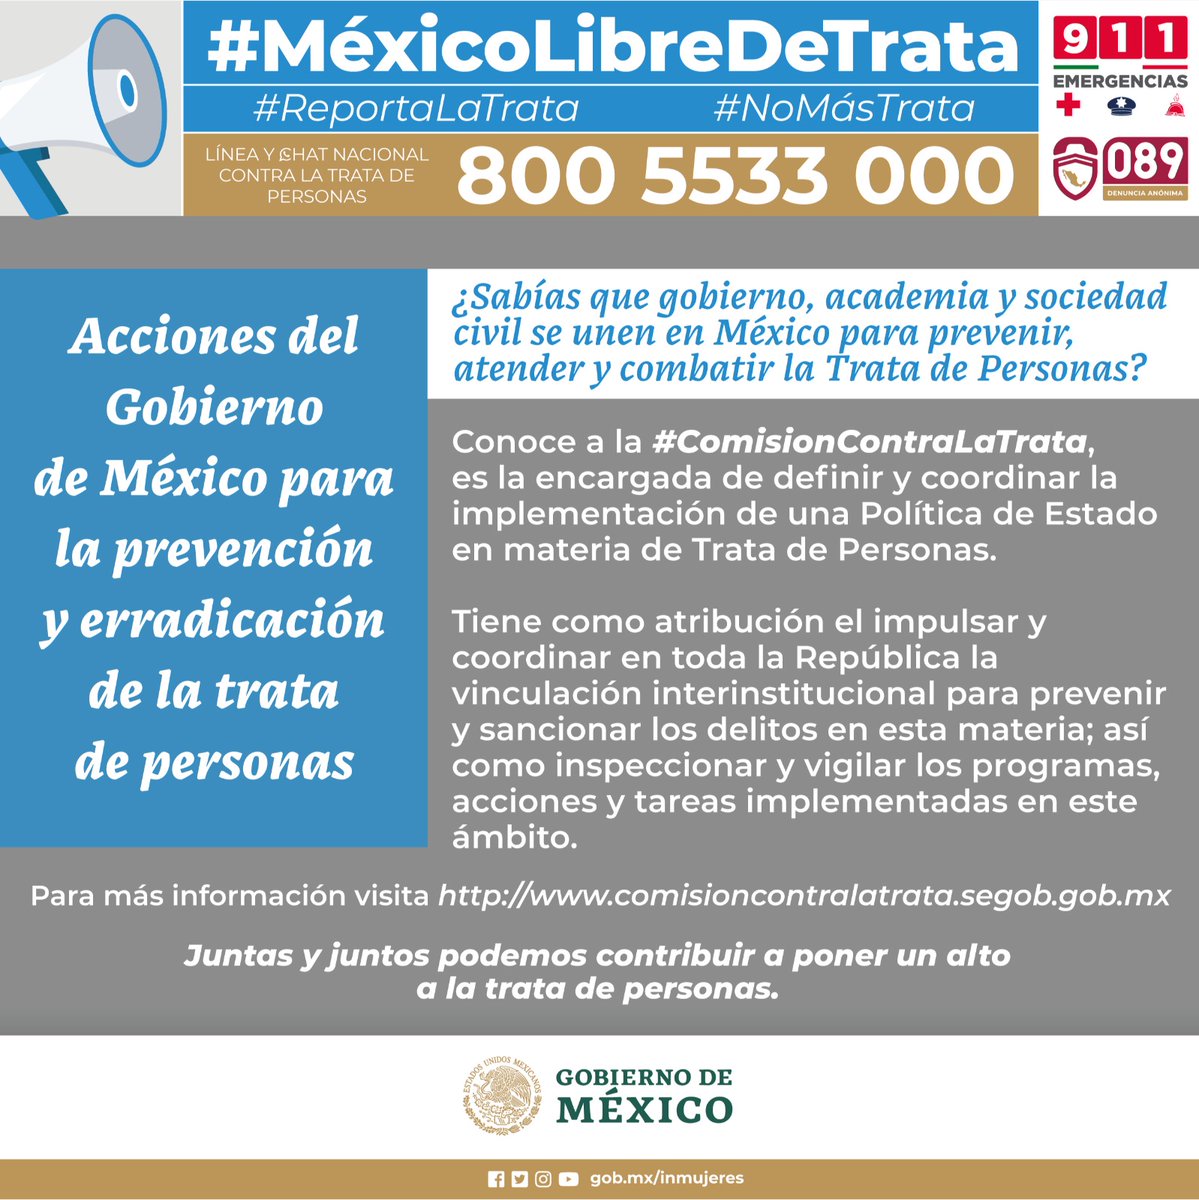 La #ComisiónContraLaTrata es la encargada de definir y coordinar la implementación de políticas públicas en materia de trata de personas. Por un #MéxicoLibreDeTrata 

🚨Denuncia al 800 5533 000 #ReportaLaTrata

💻Conoce más en comisioncontralatrata.segob.gob.mx